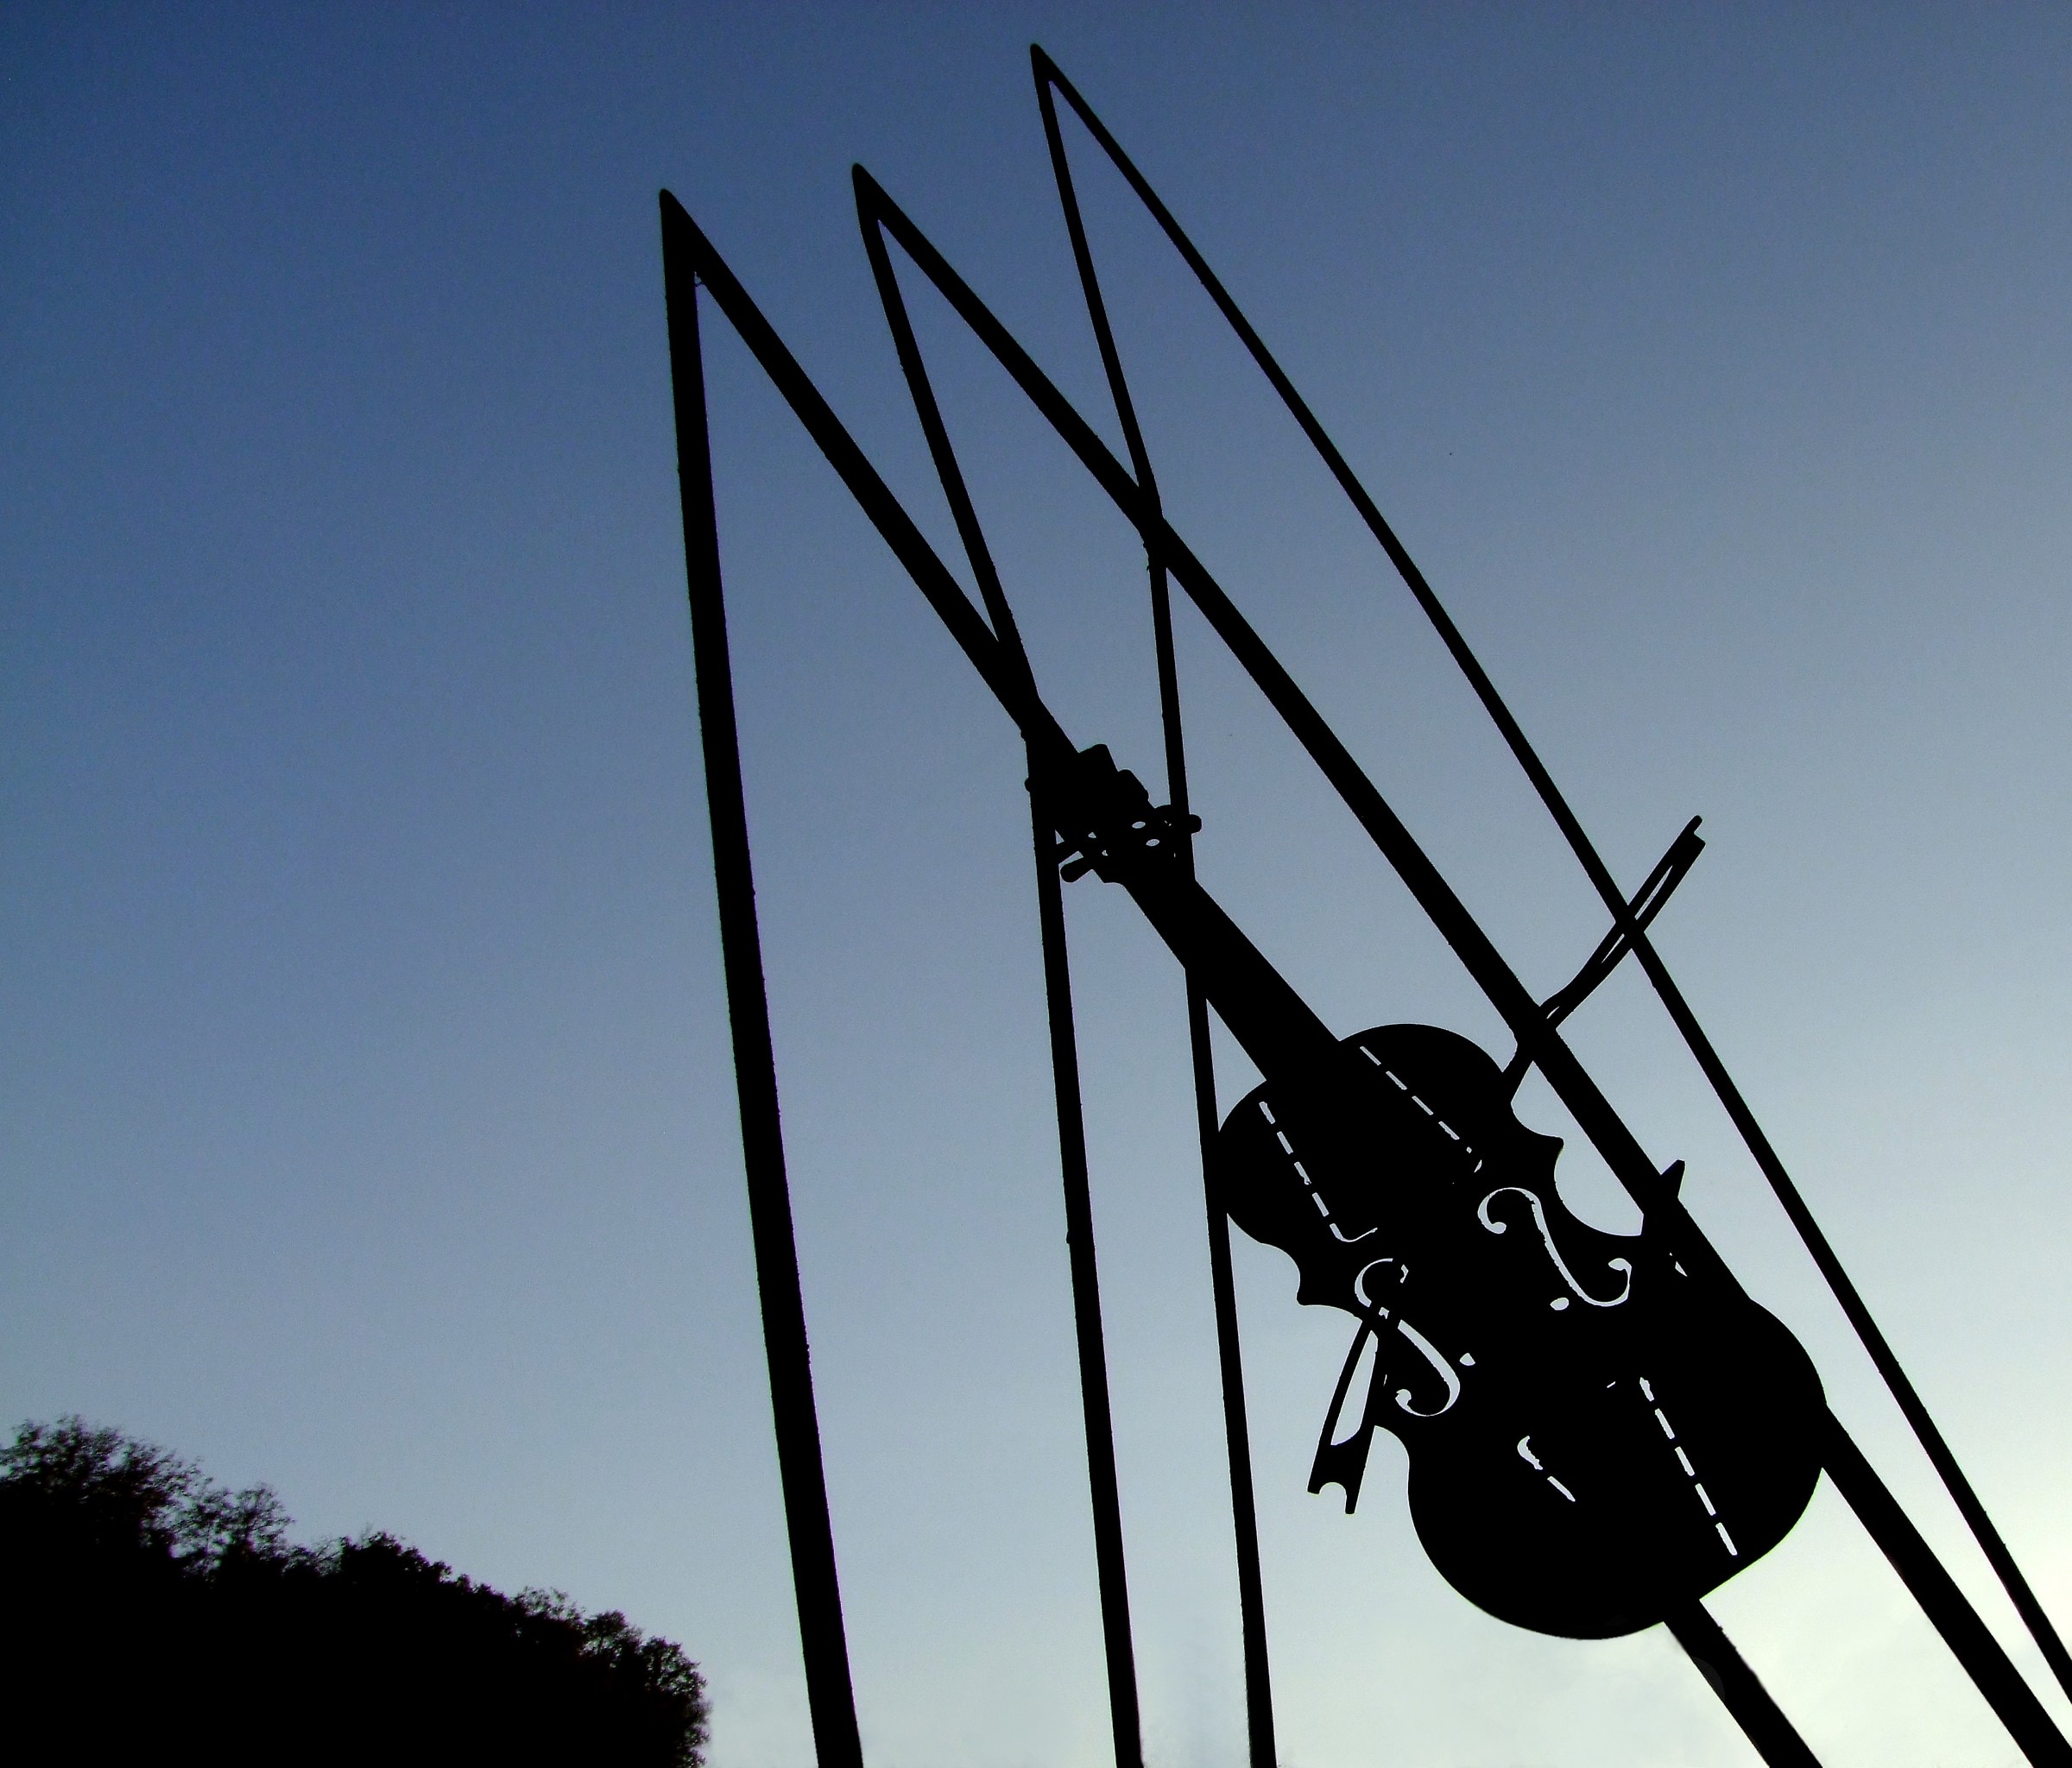 Violin in the sky...